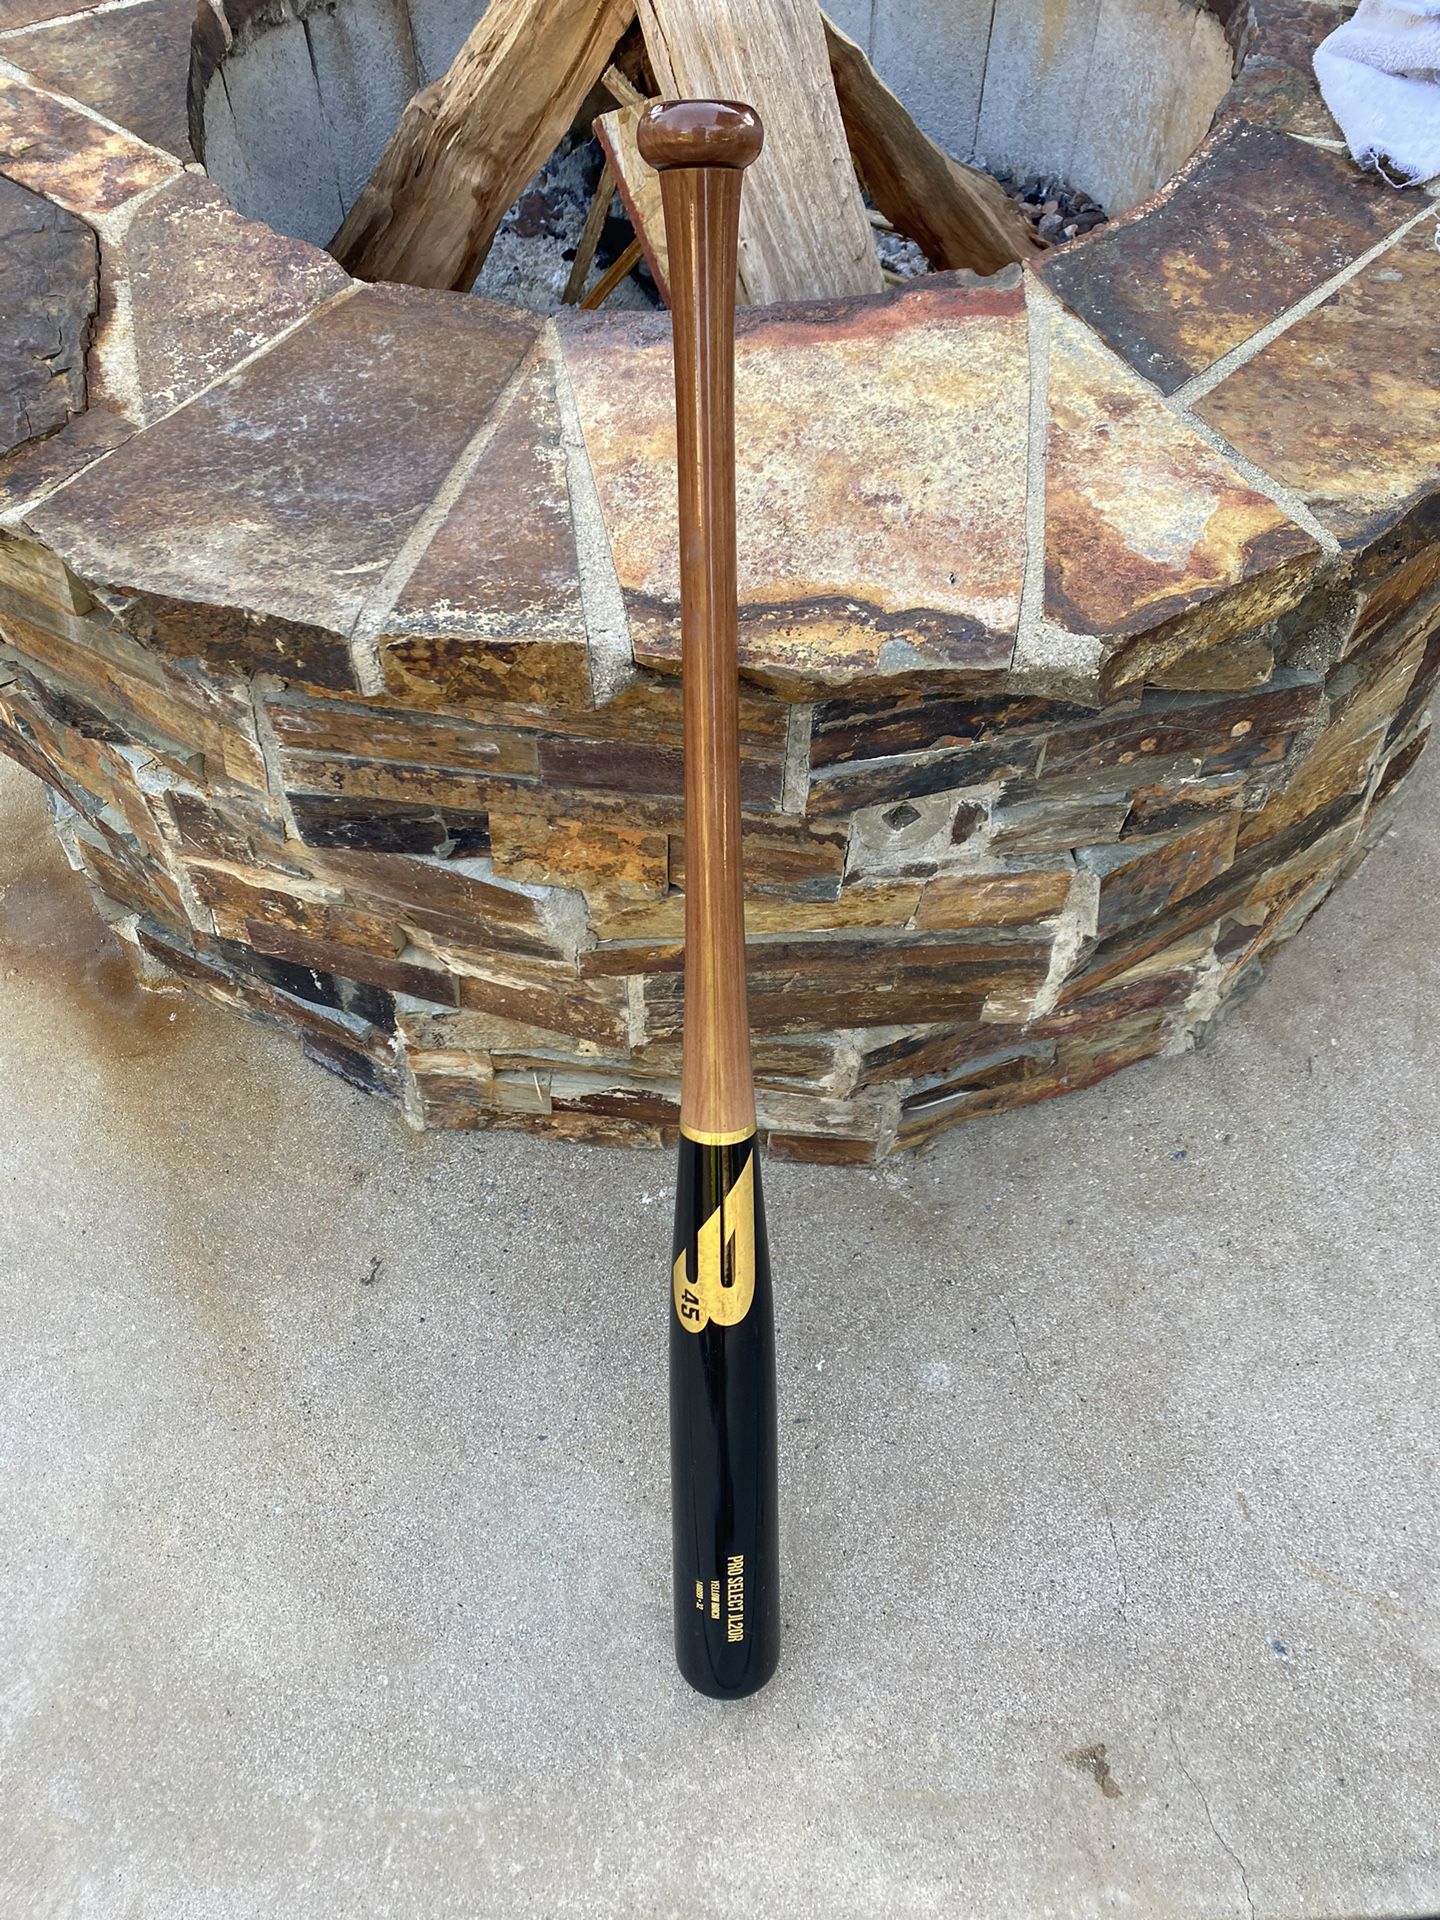 B45 Pro Select Yellow Birch Baseball Bat